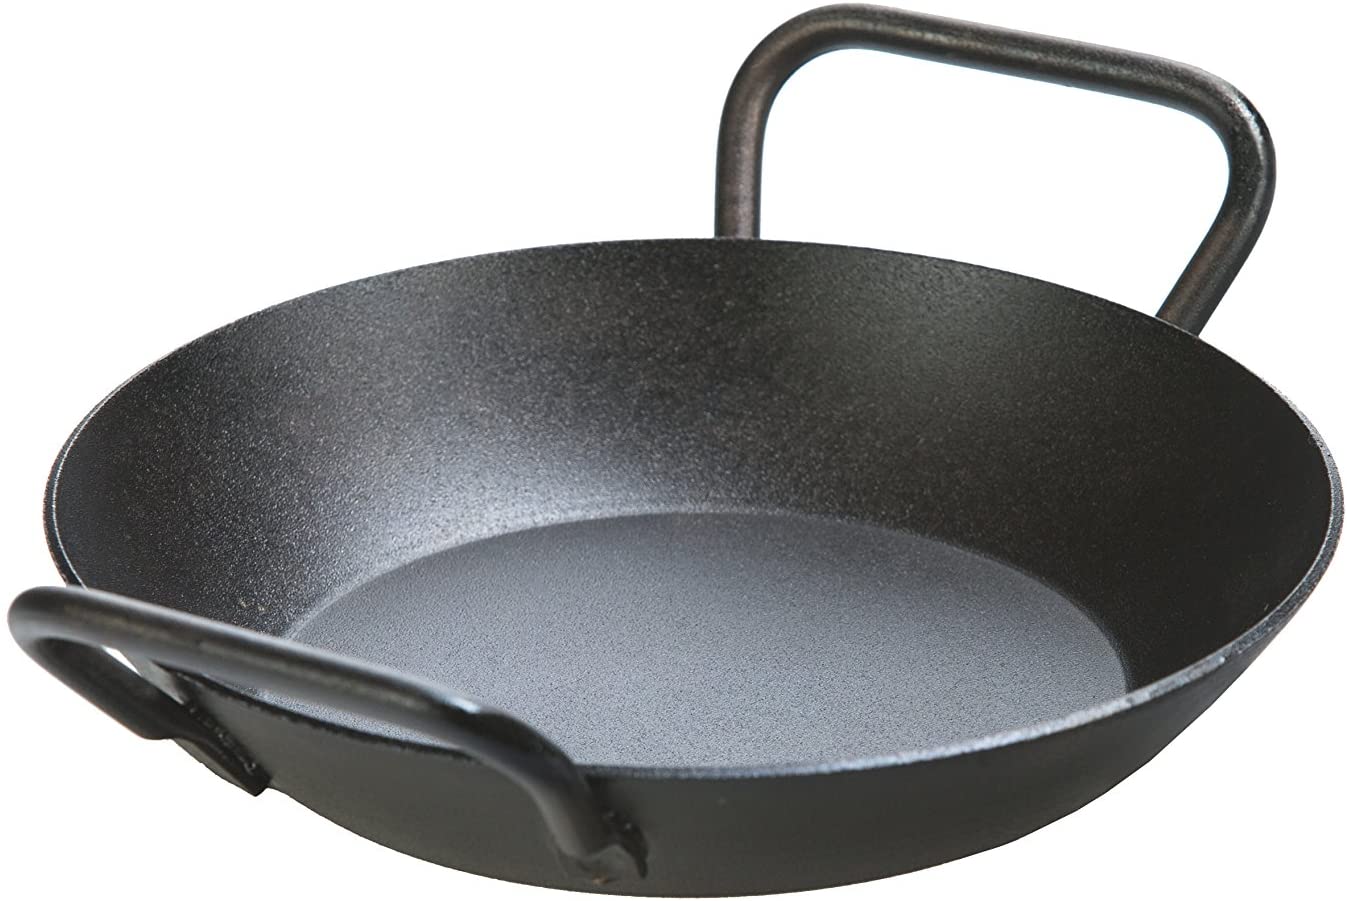 Lodge - 8 Inch Seasoned Carbon Steel Dual Handle Pan